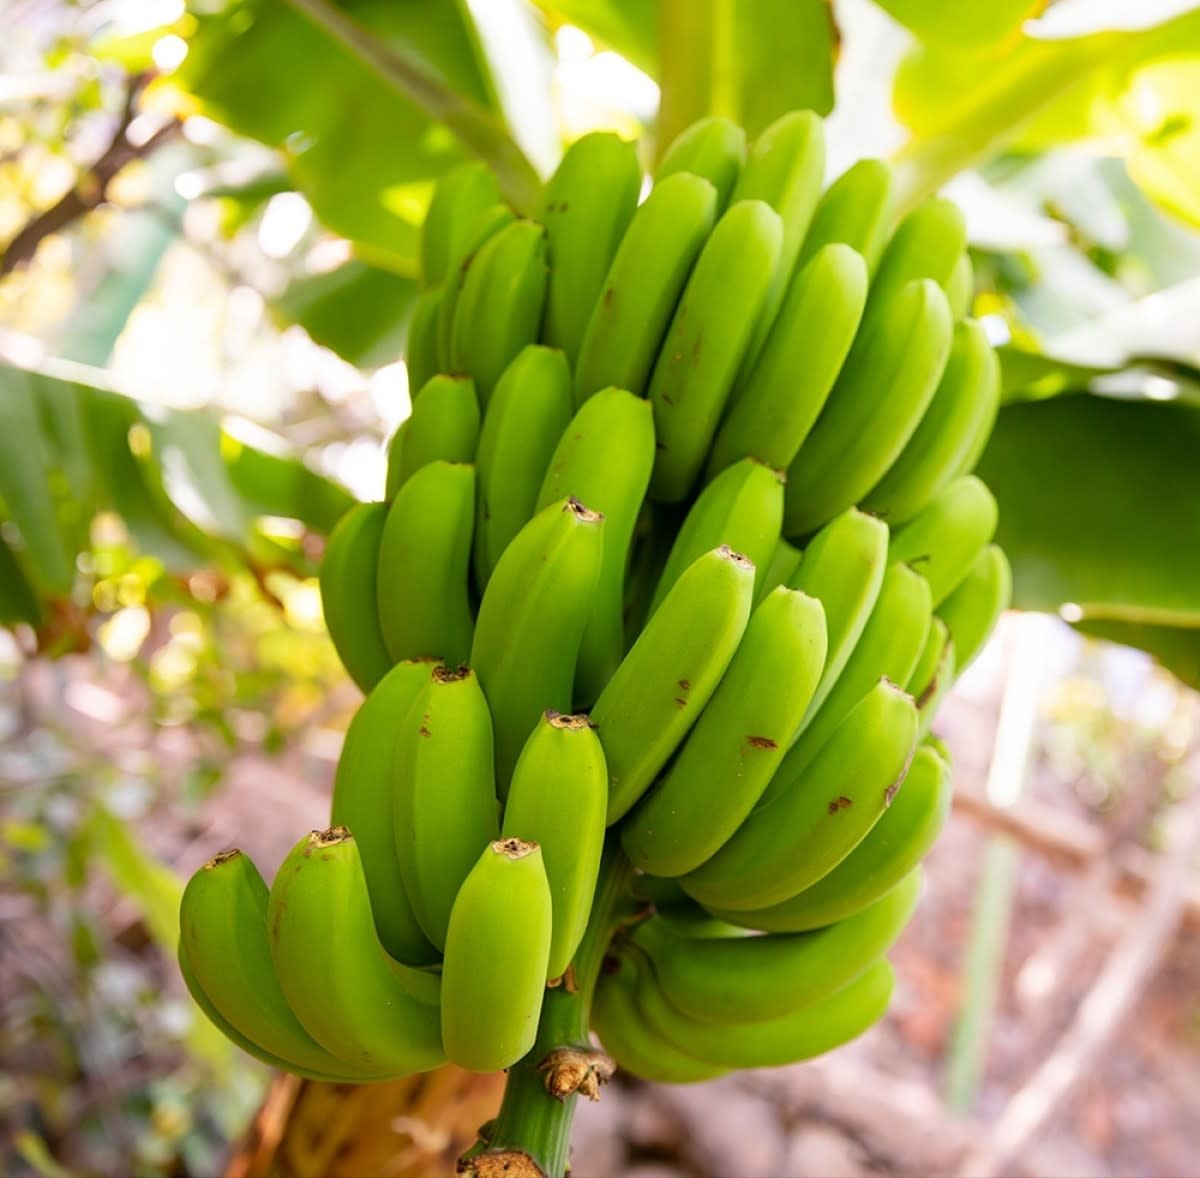 Banana Grand Nain Variety